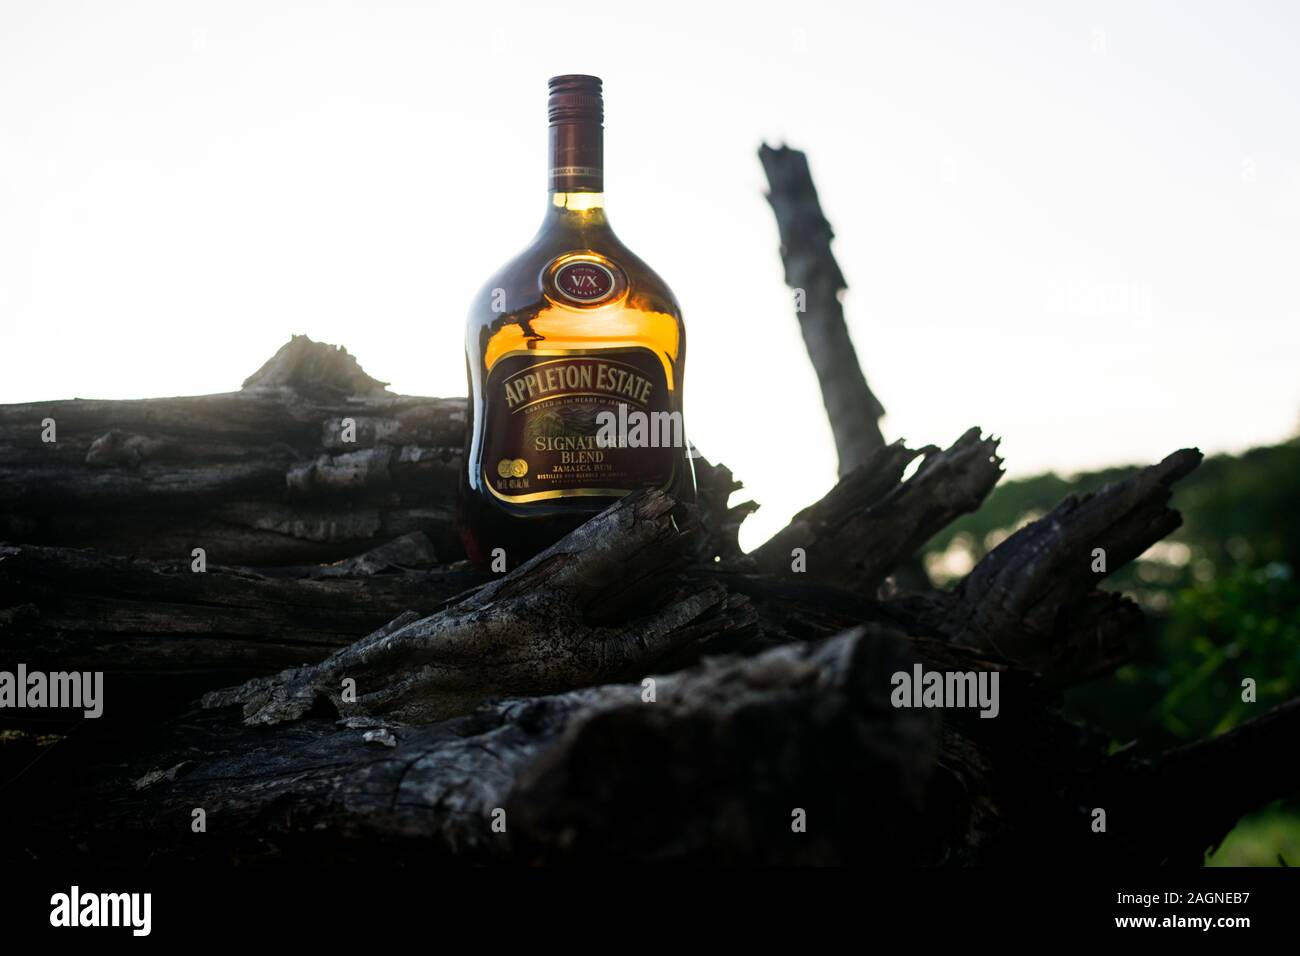 APPLETON ESTATE, JAMAICA - Jul 05, 2019: Bottle of APPLETON ESTATE SIGNATURE BLEND, Jamaica Rum Signature Blend is the new name for Appleton's VX Stock Photo